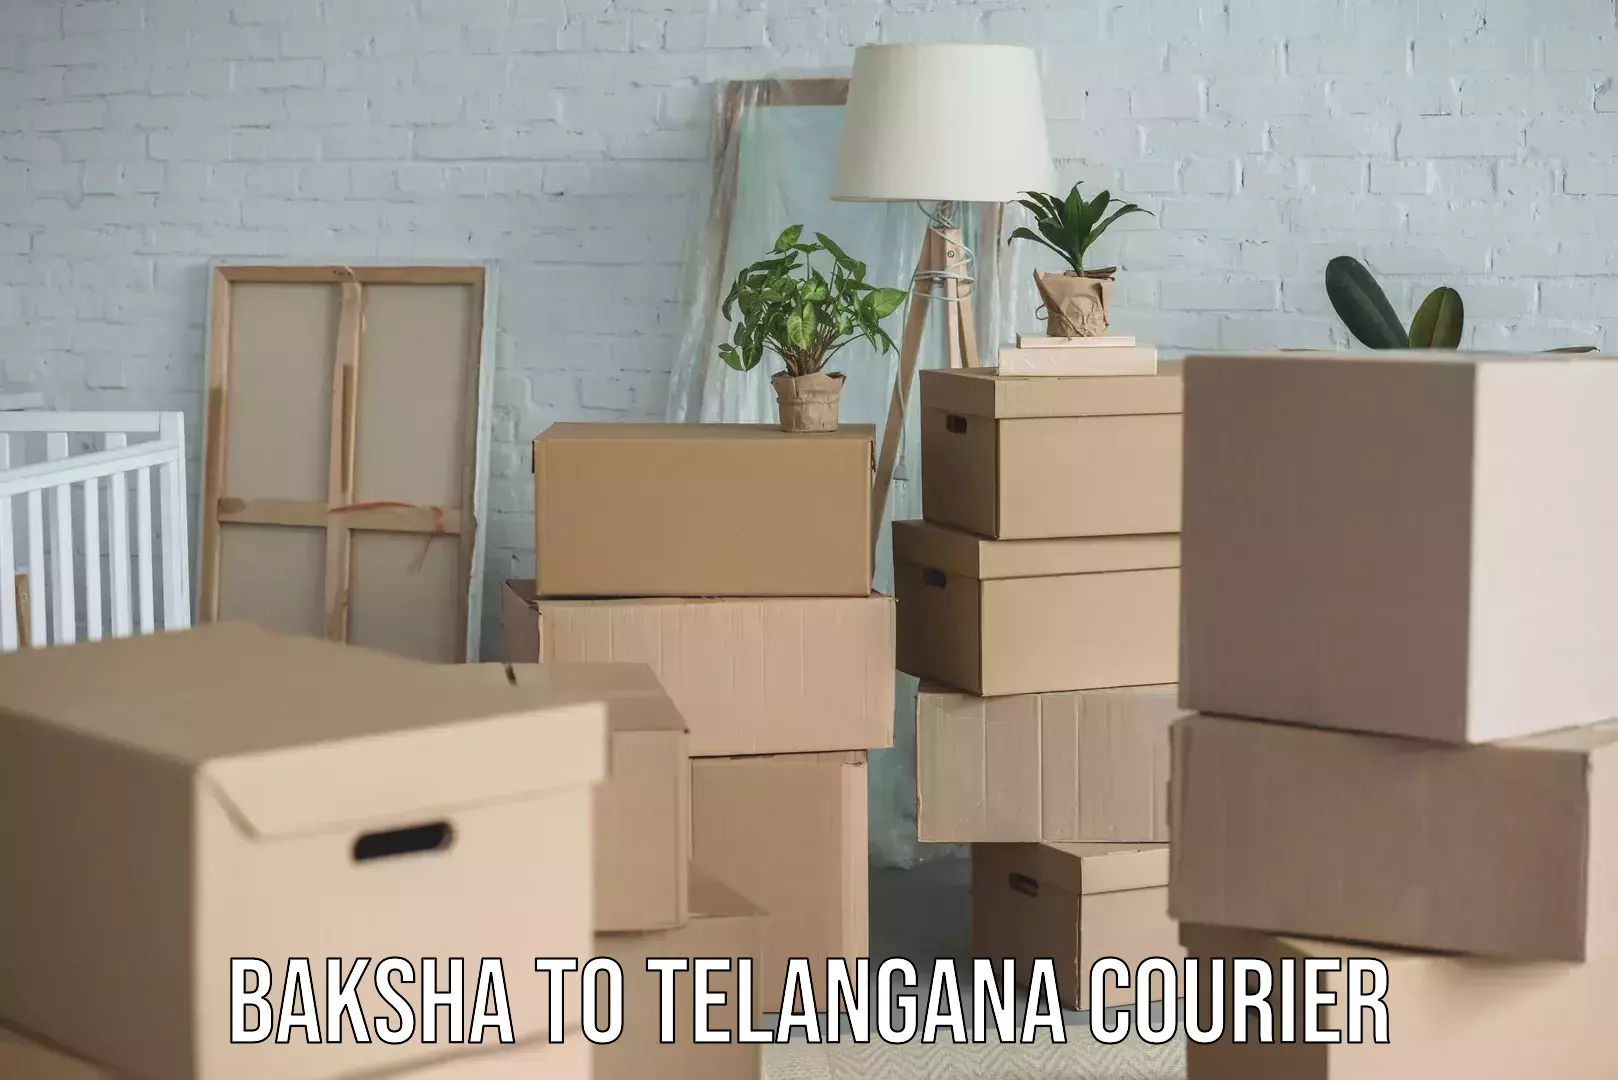 Express delivery capabilities Baksha to Telangana